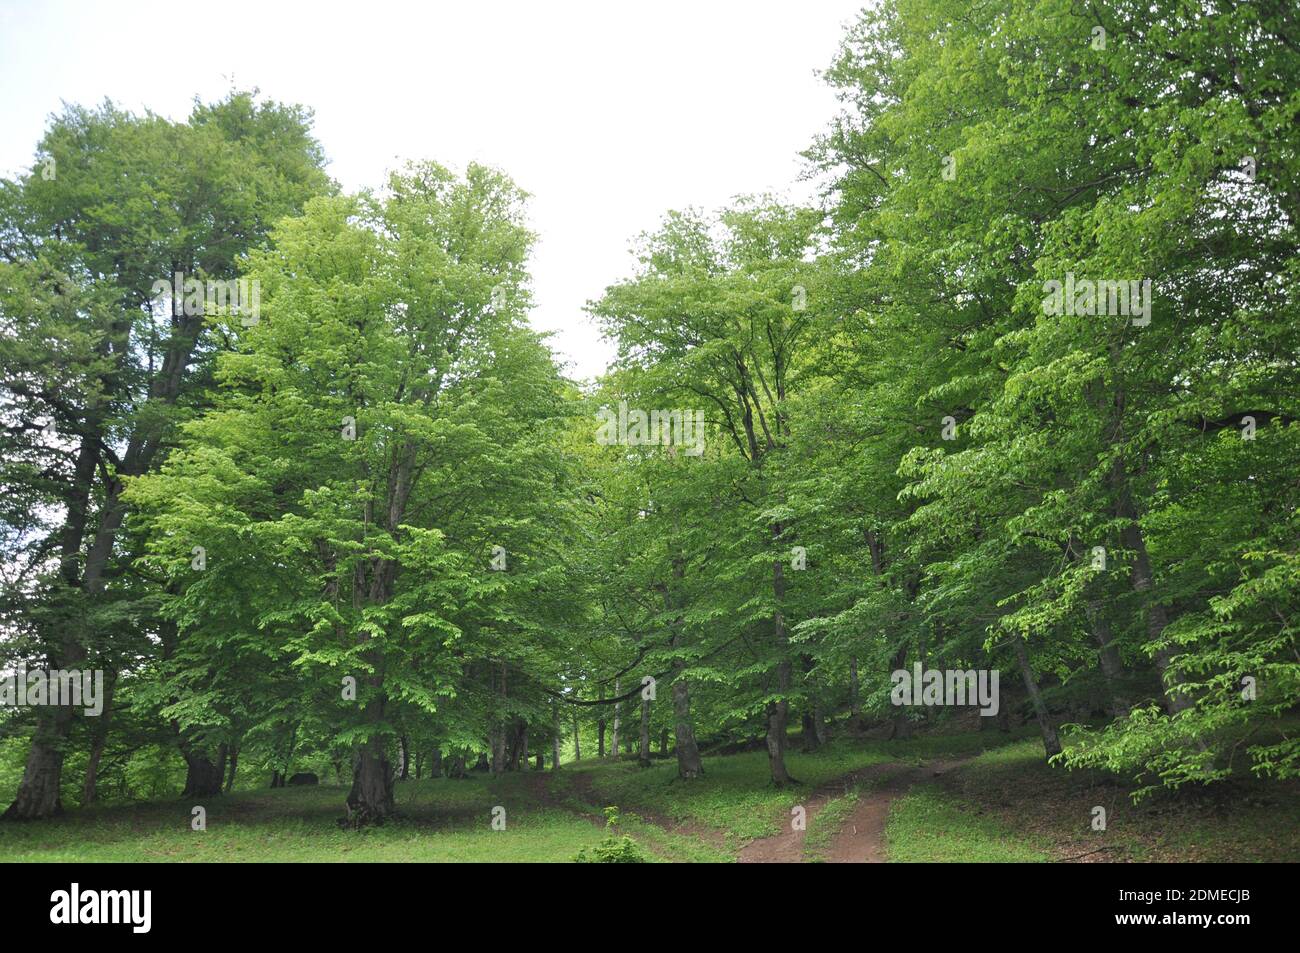 Green trees in Tavush province Armenia Stock Photo